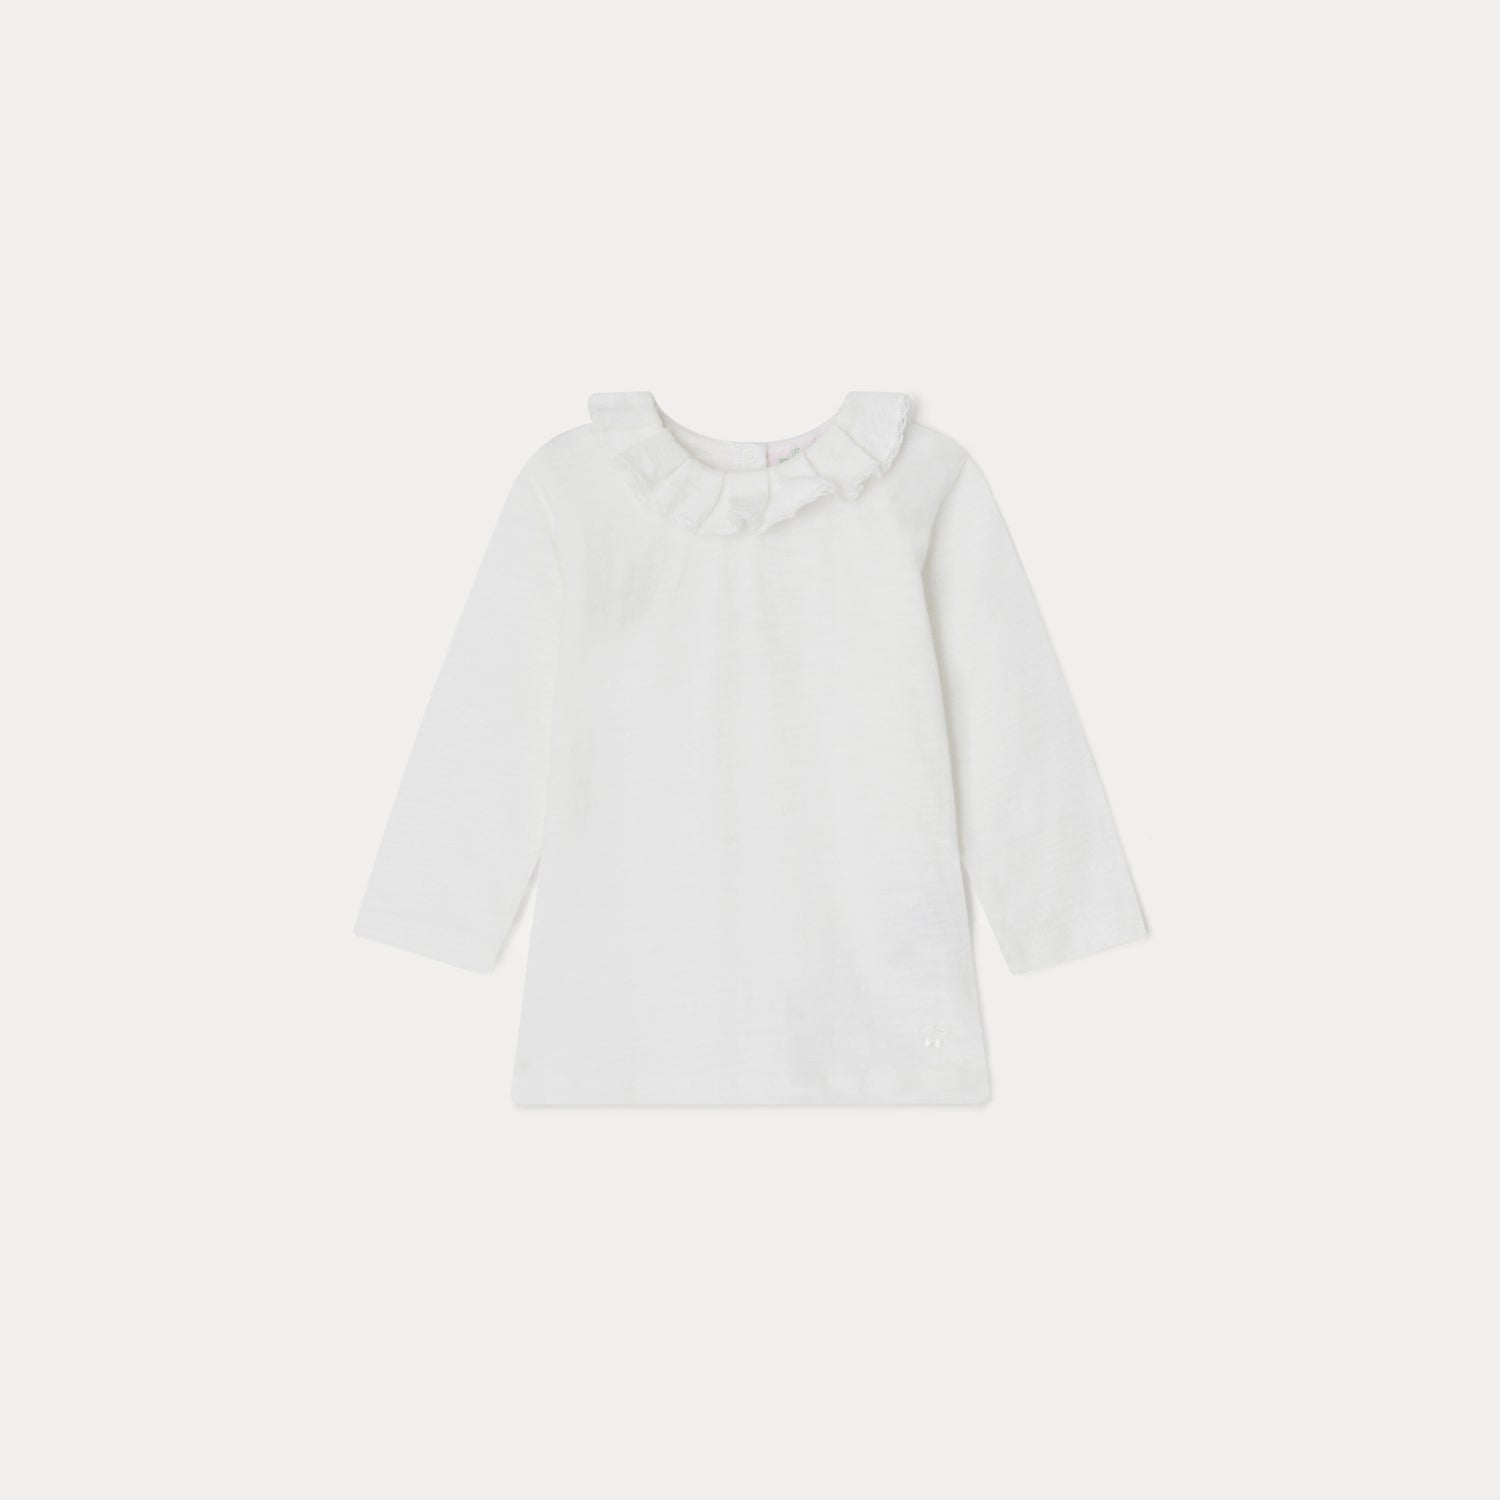 Baby Girls White Ruffled Cotton T-Shirt